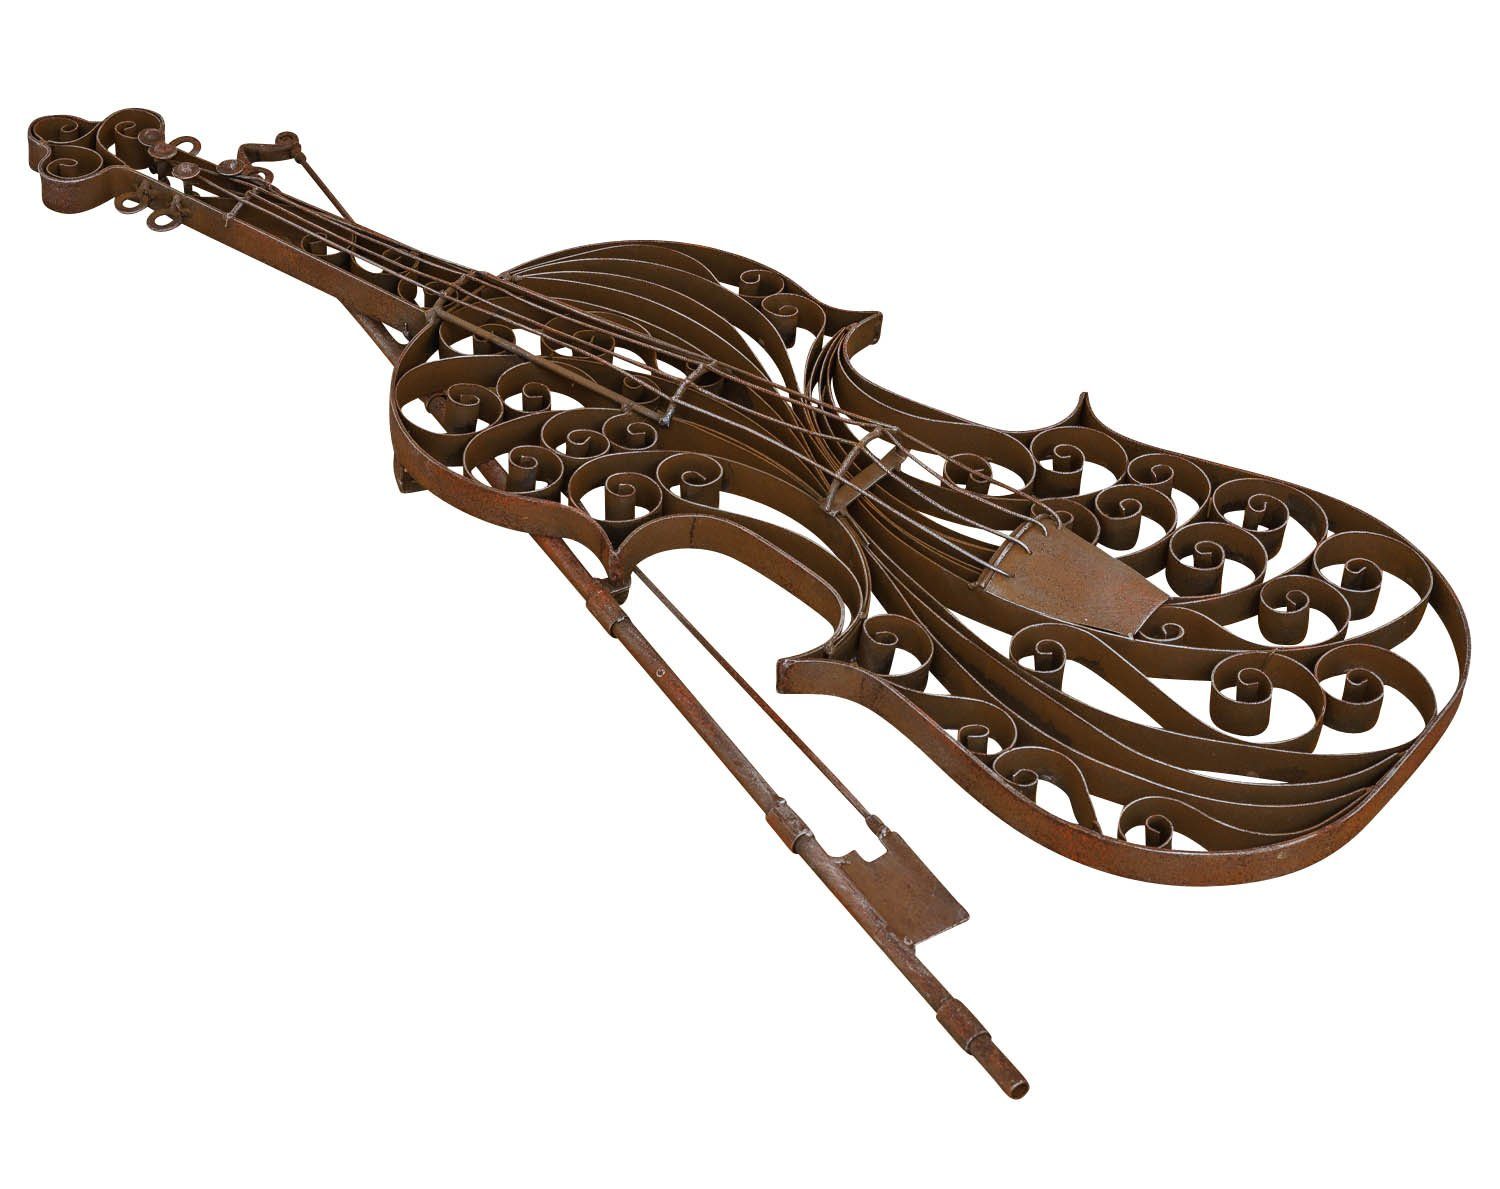 Wanddekoration Violine Dekoration Metall Gartenfigur Modell Aubaho Geige Instrument Garte